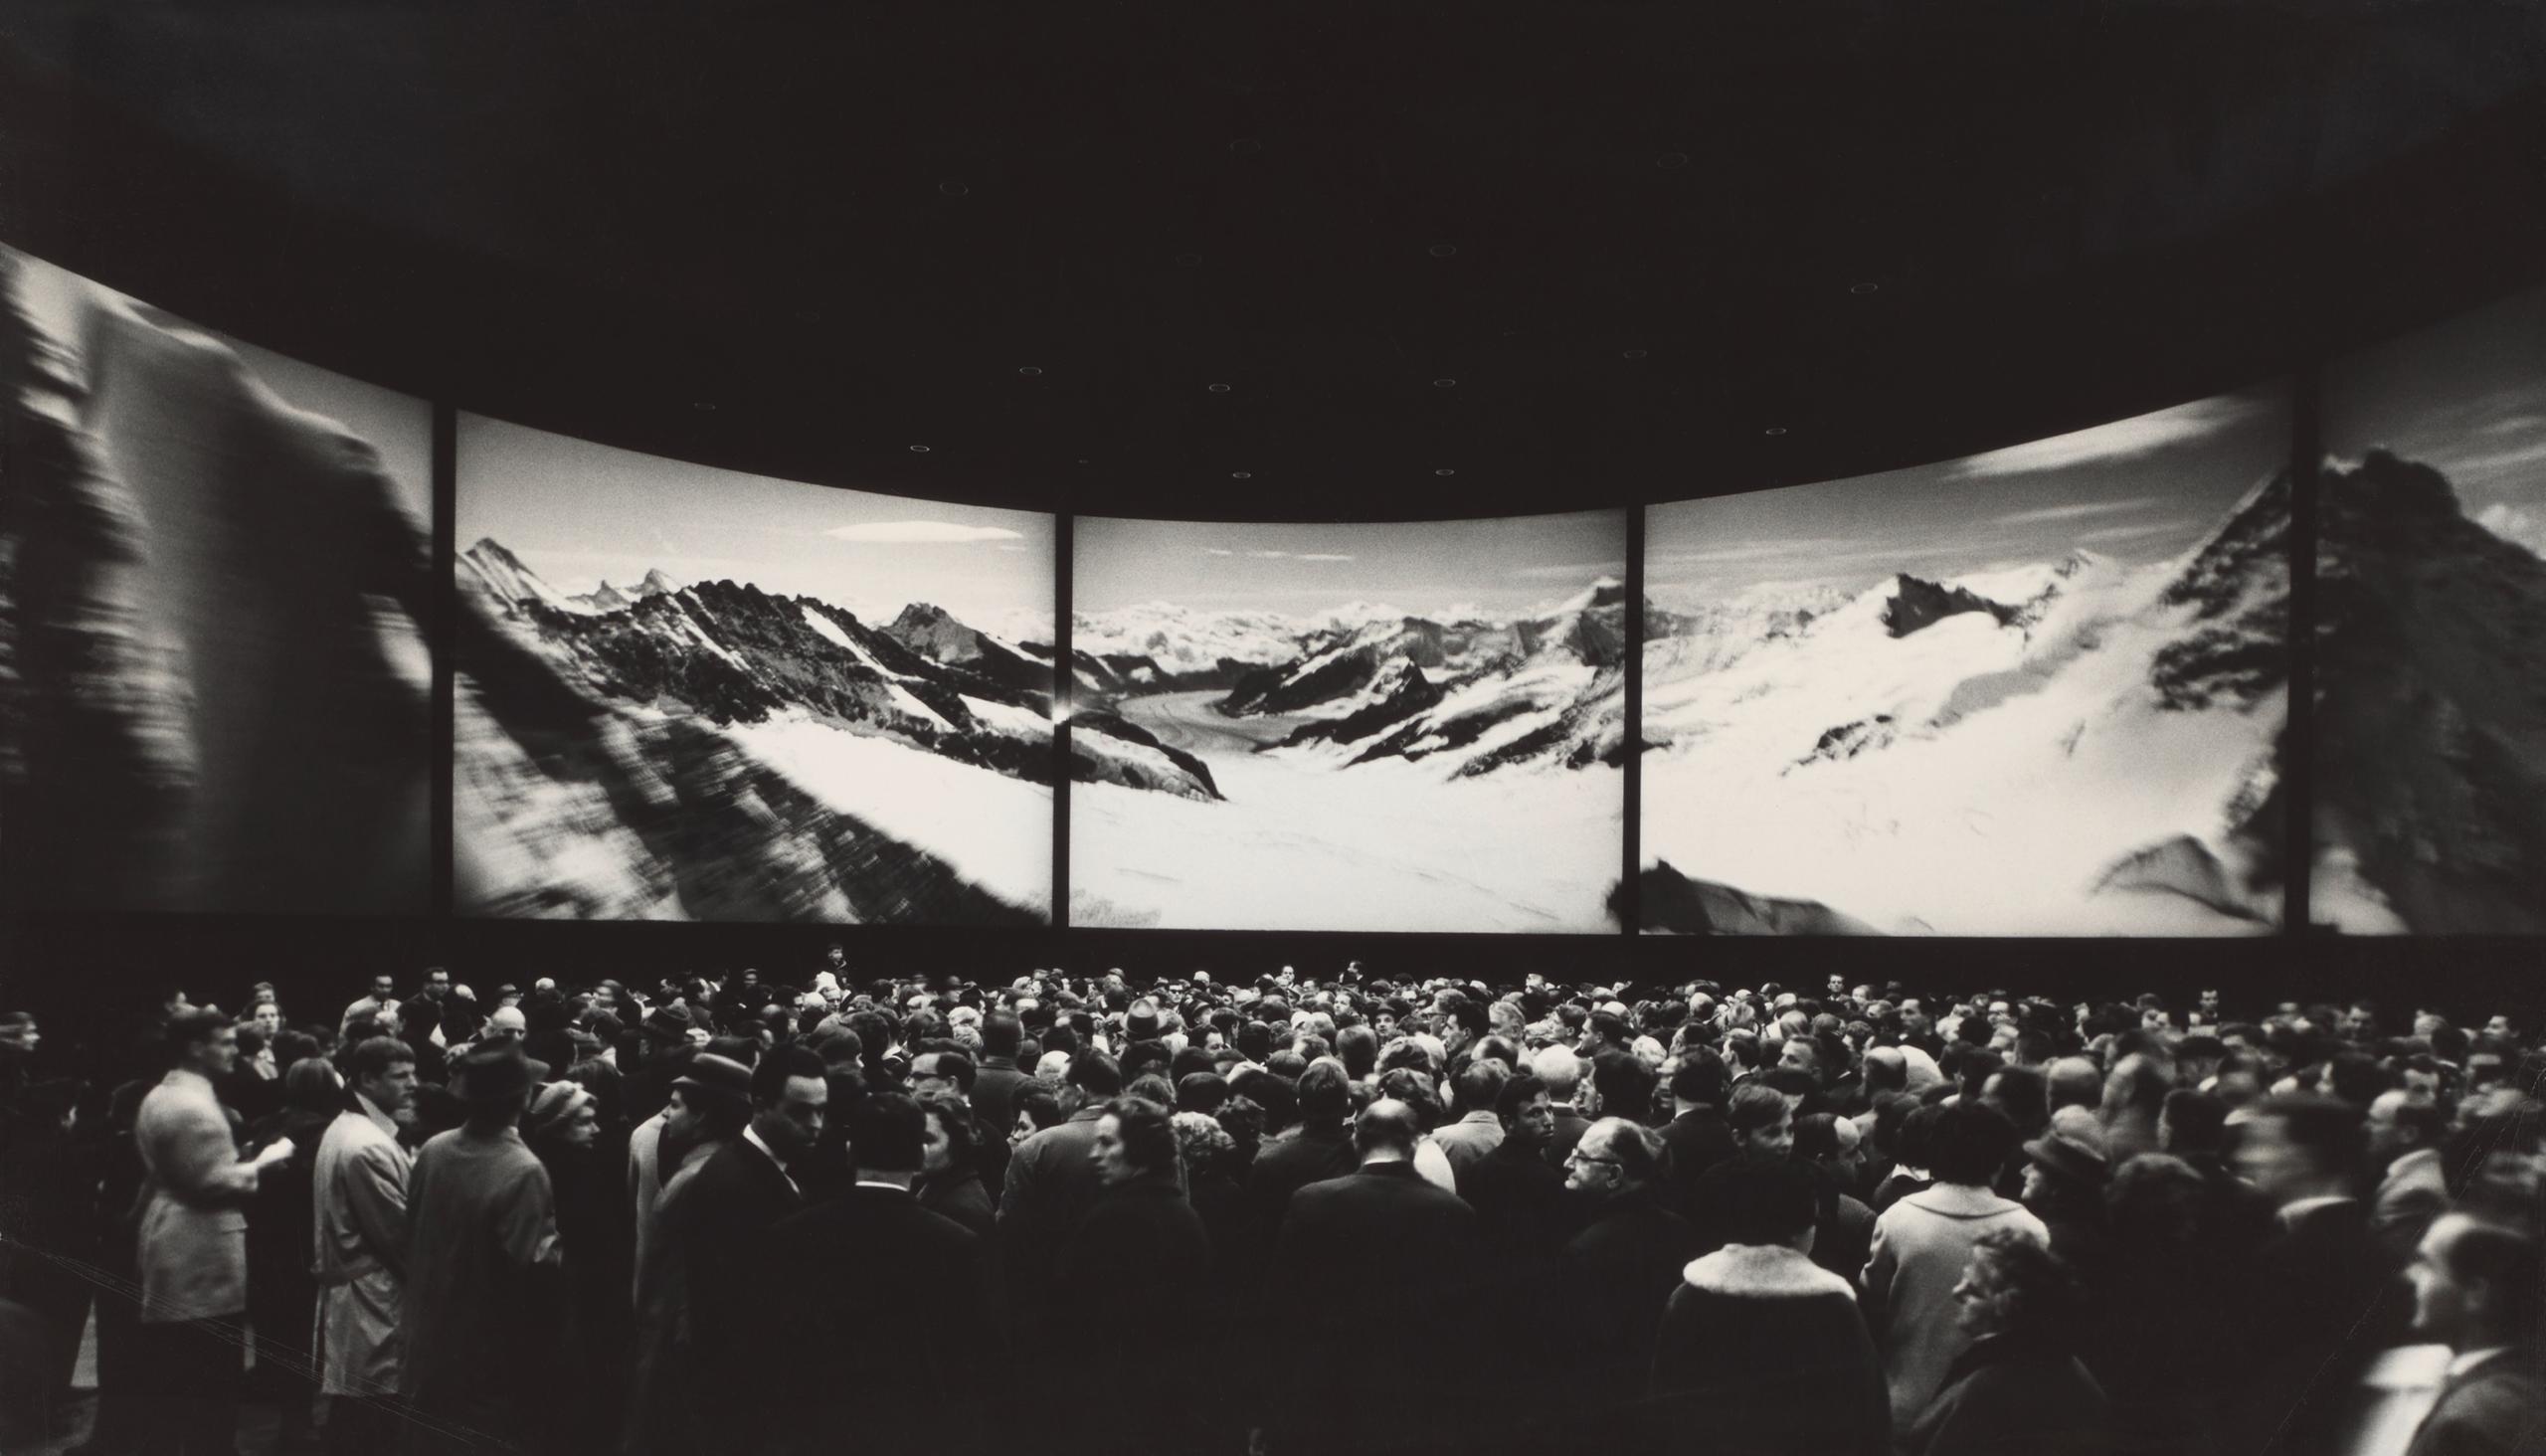 مسرح سيركاراما الدائري الذي أقامته الشركة الفدرالية للسكك الحديدية في المعرض الوطني السويسري لعام 1964